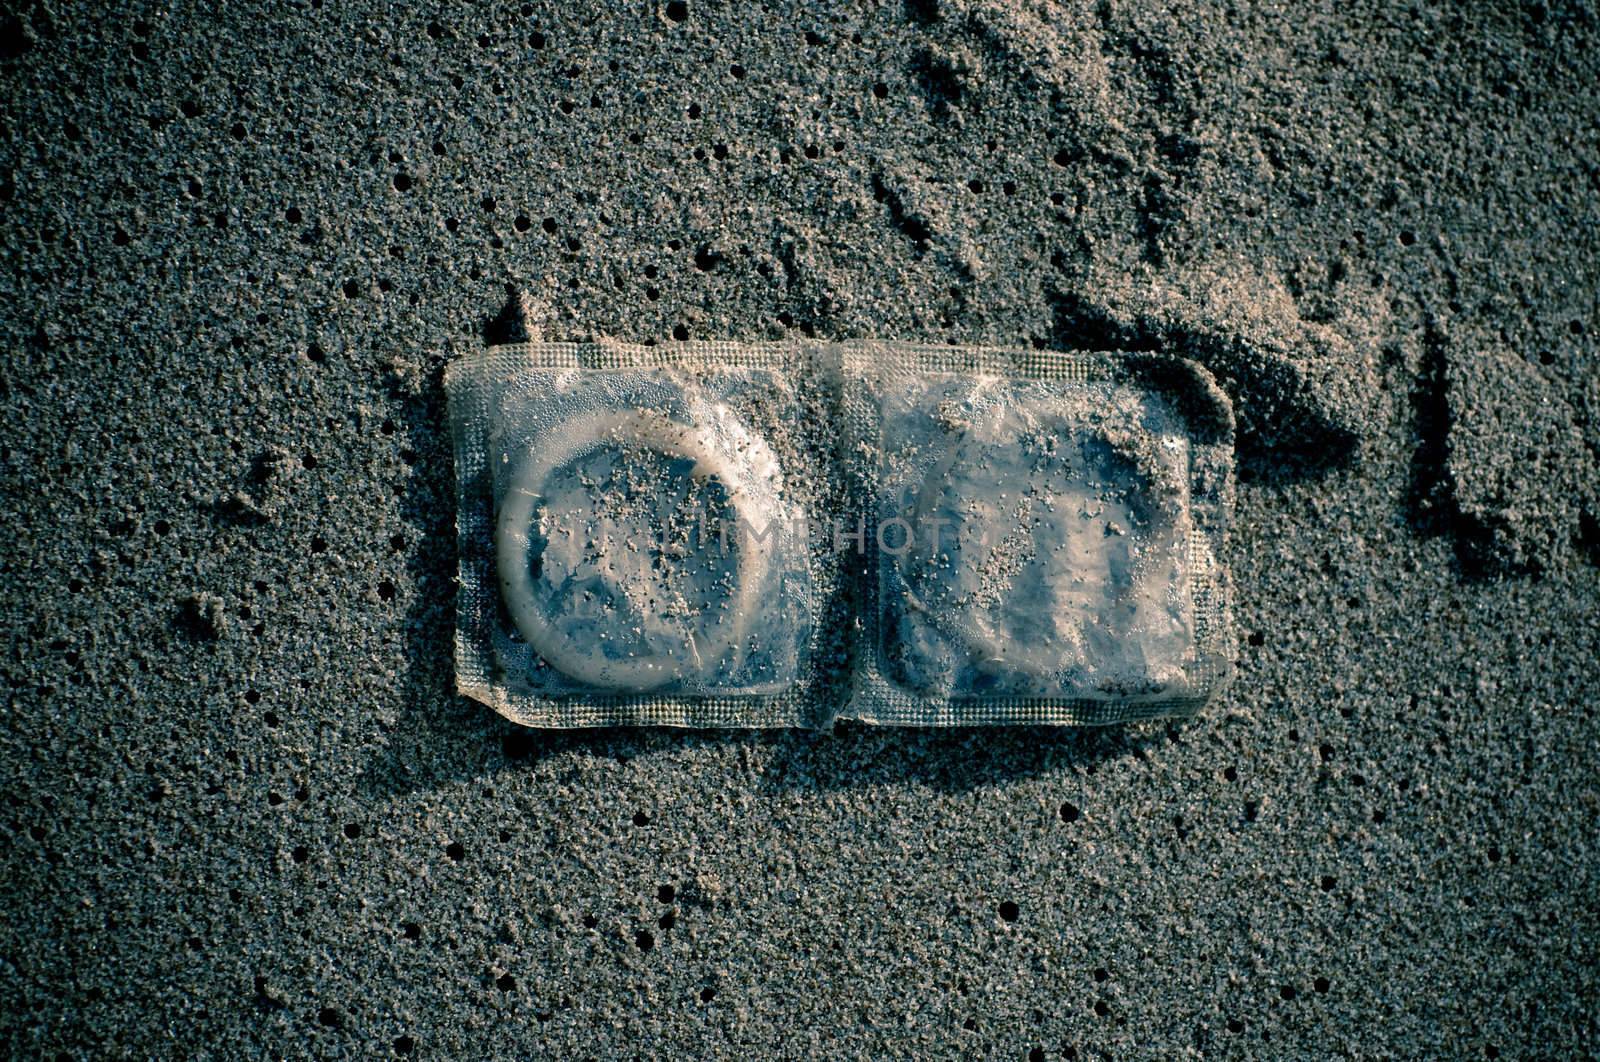 Condoms in sand